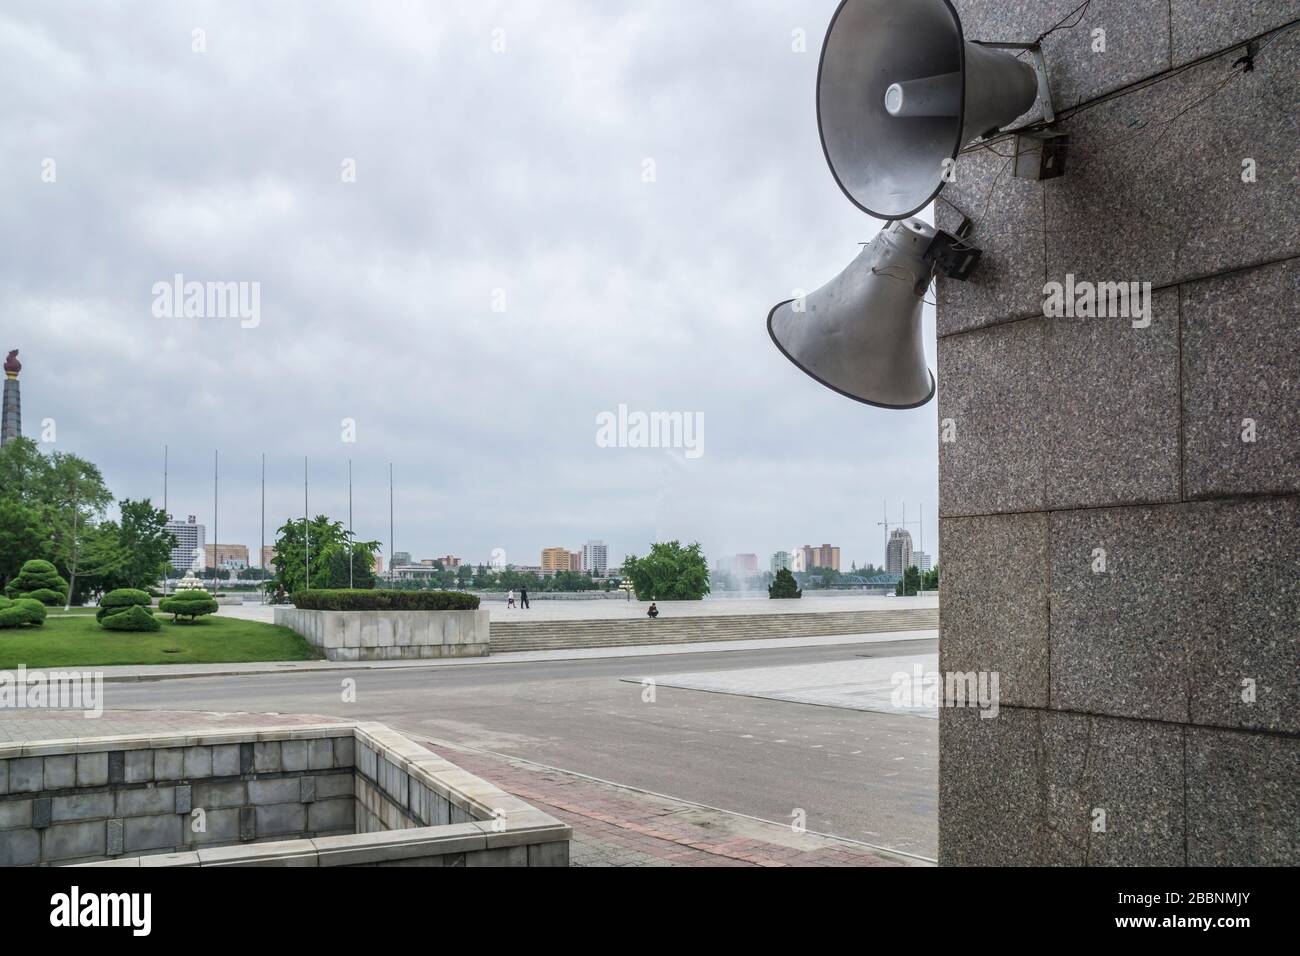 Nordkorea spielt Song, um die Bürger Pjöngjangs aufzuwachen Stockfoto